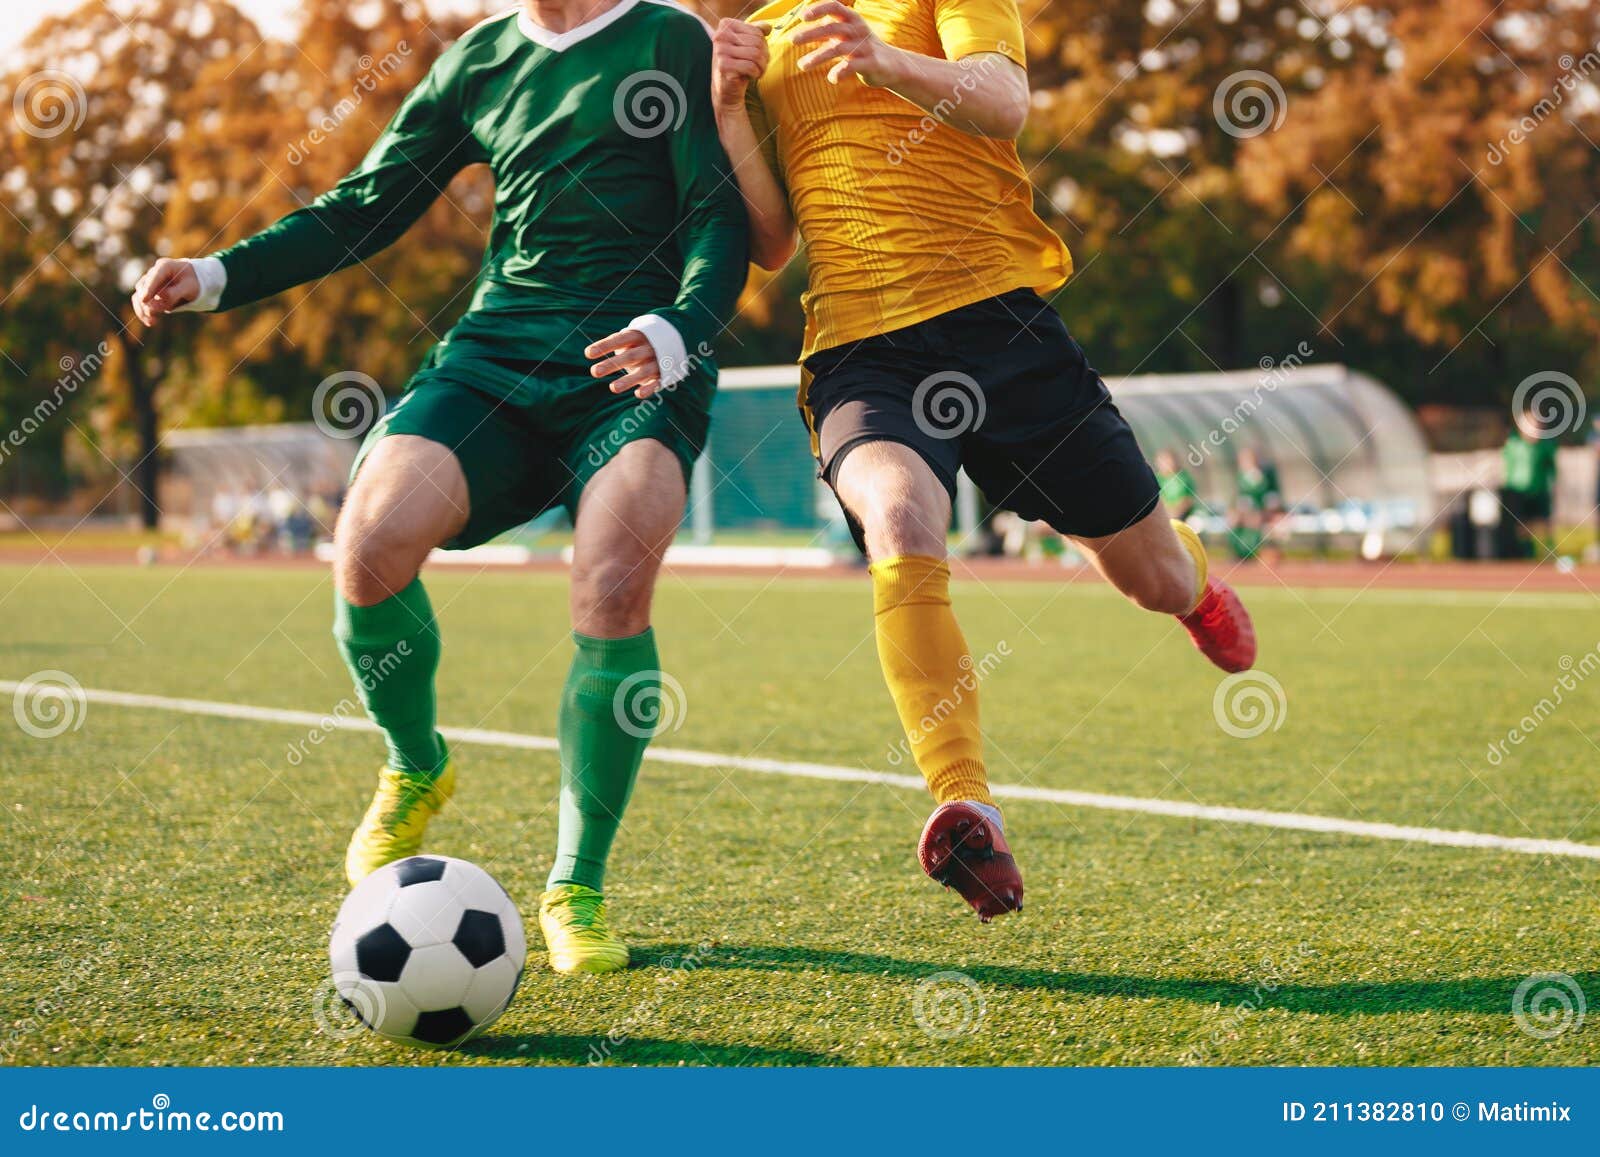 Dois Jogadores De Futebol Correndo E Dando Pontapés. Jogadores De